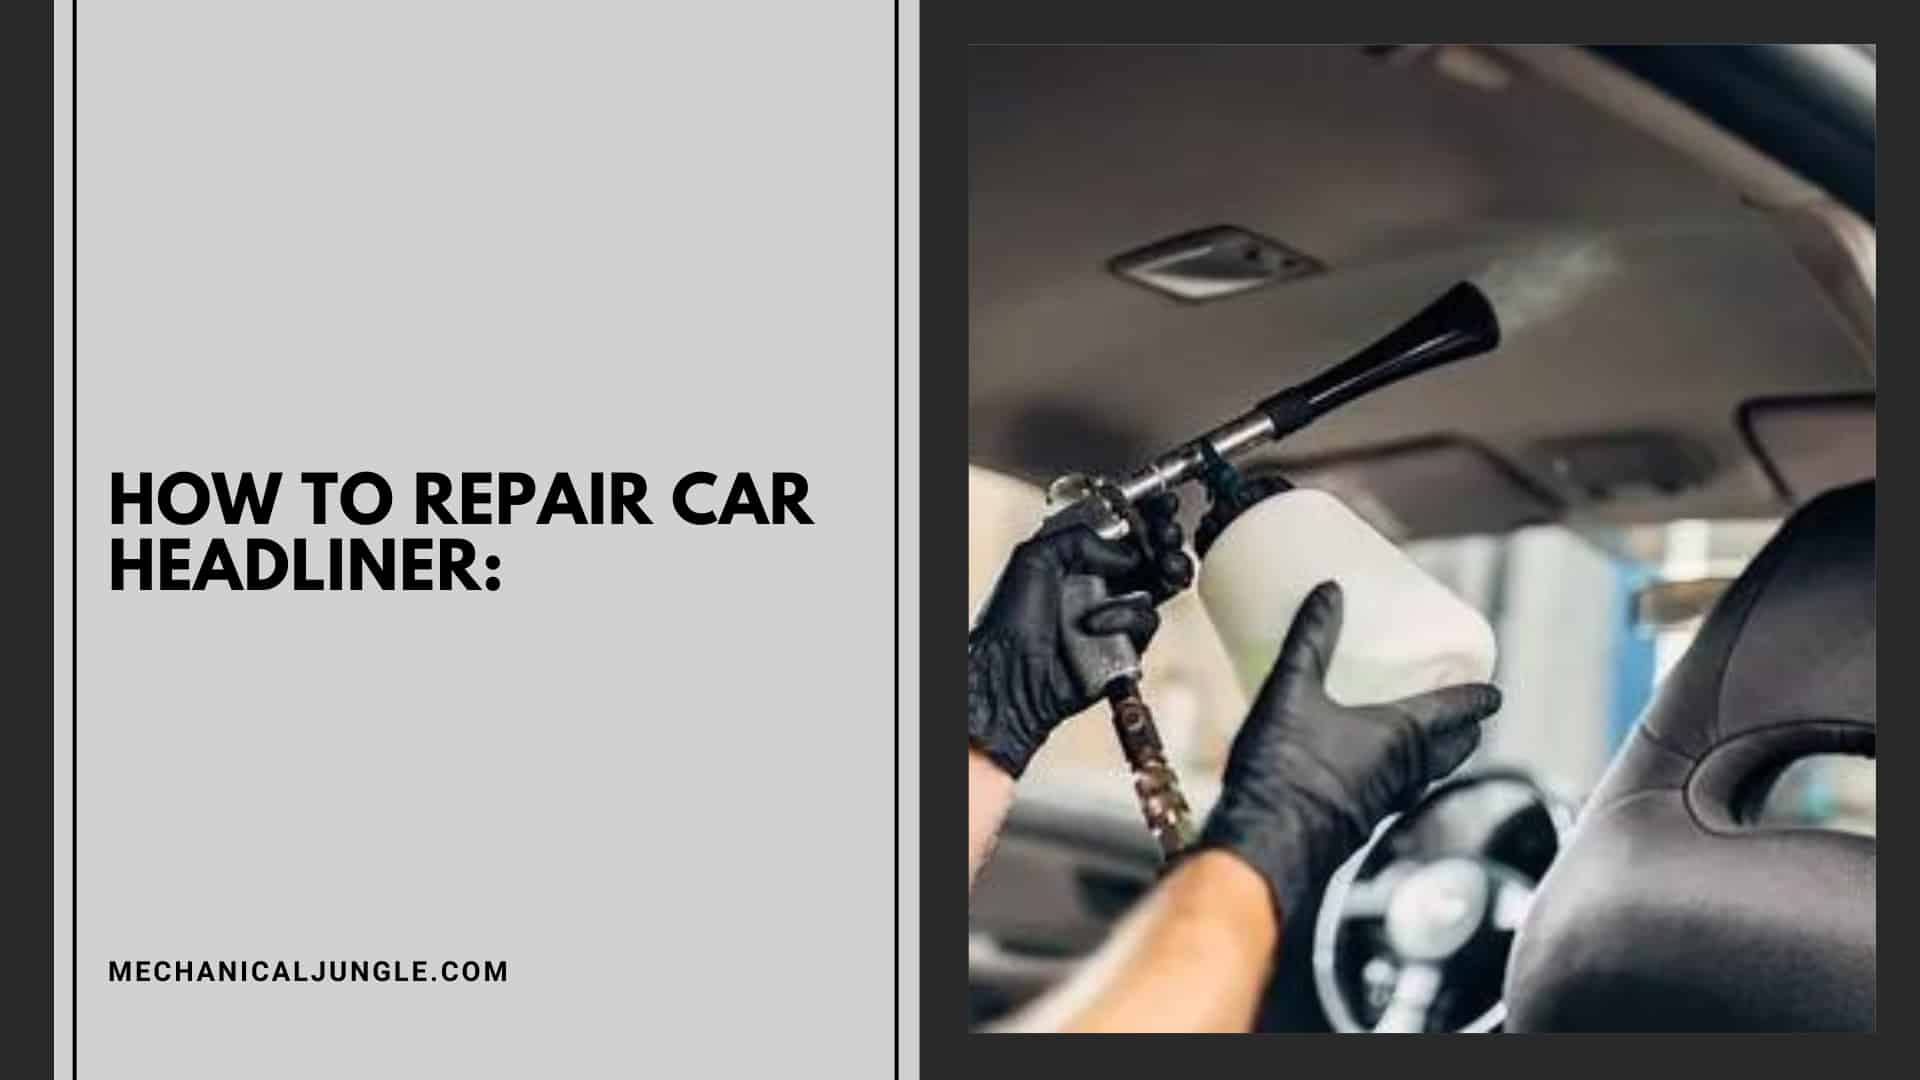 How to Repair Car Headliner: